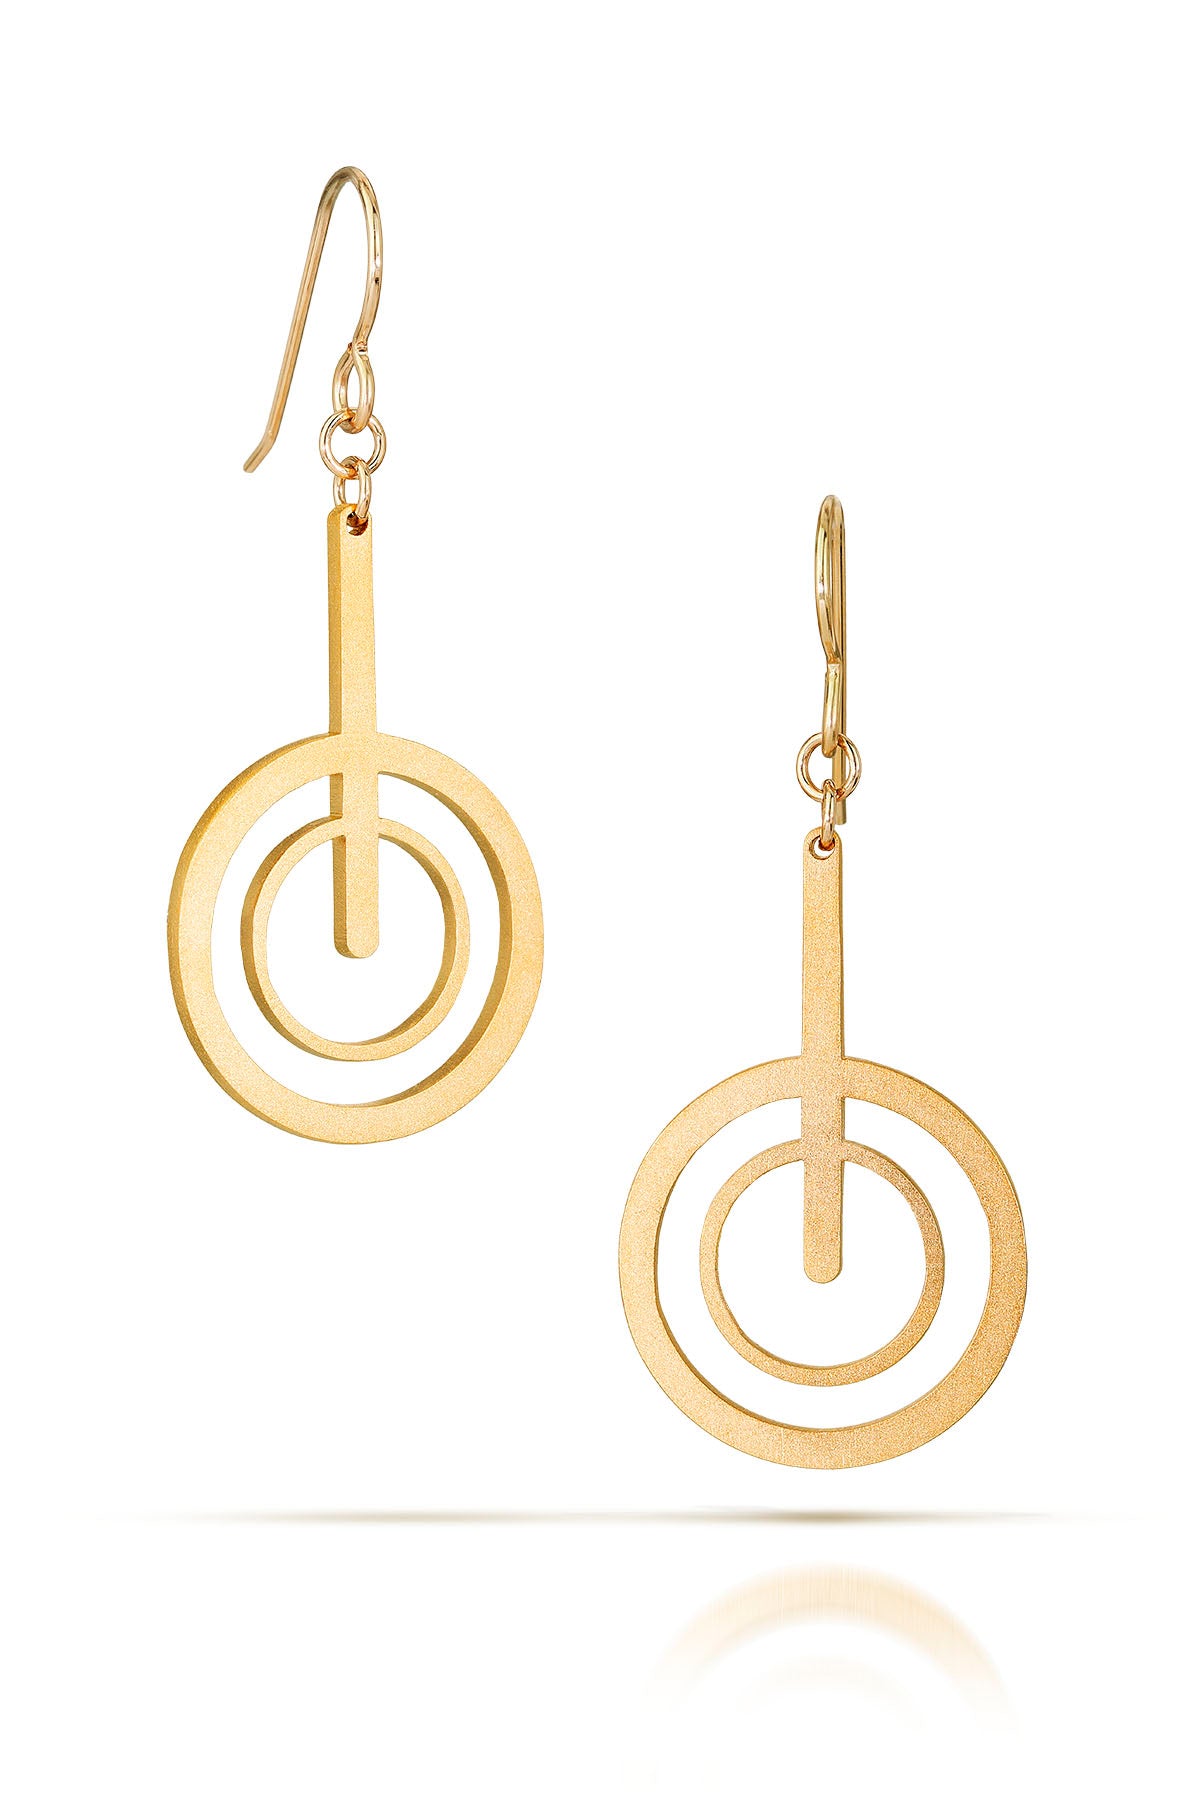 bullseye earrings, 18k gold-plated